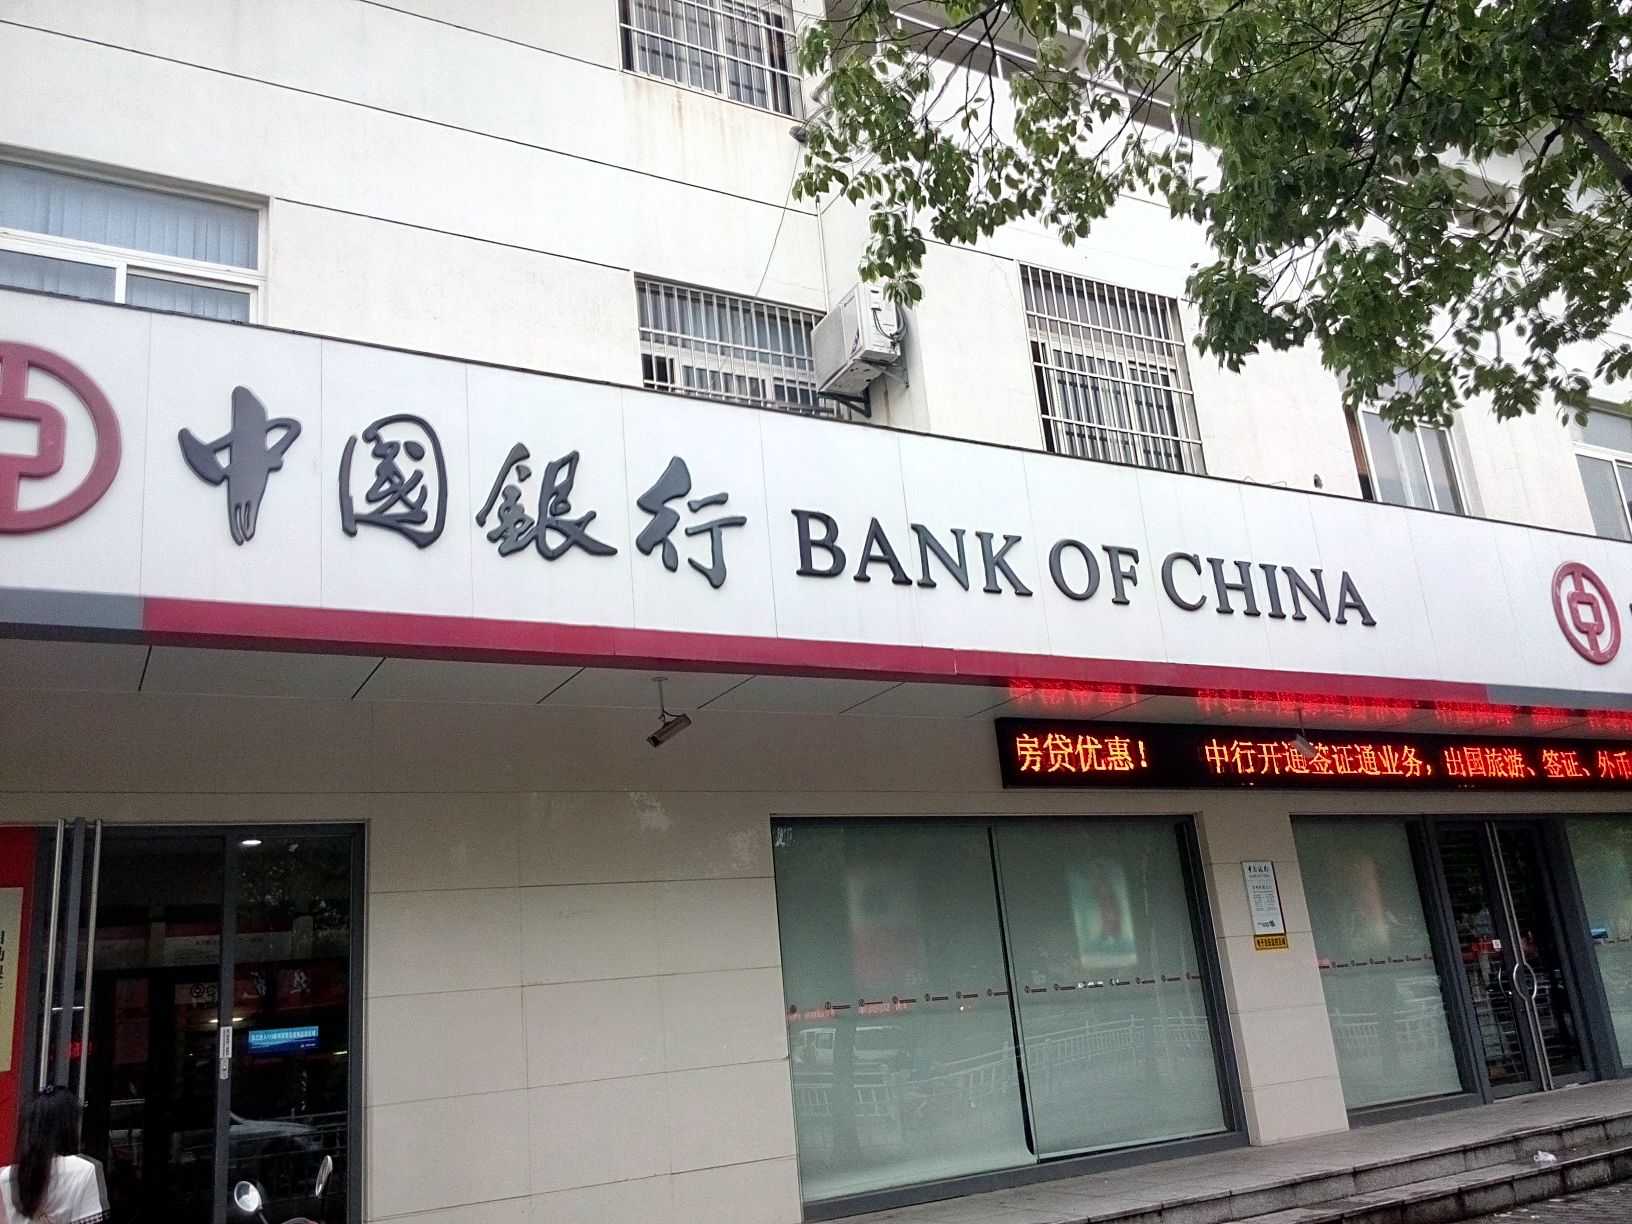 China bank. Китайские банки. Банк Китая BC. Банк оф чина. Bank of China в России.